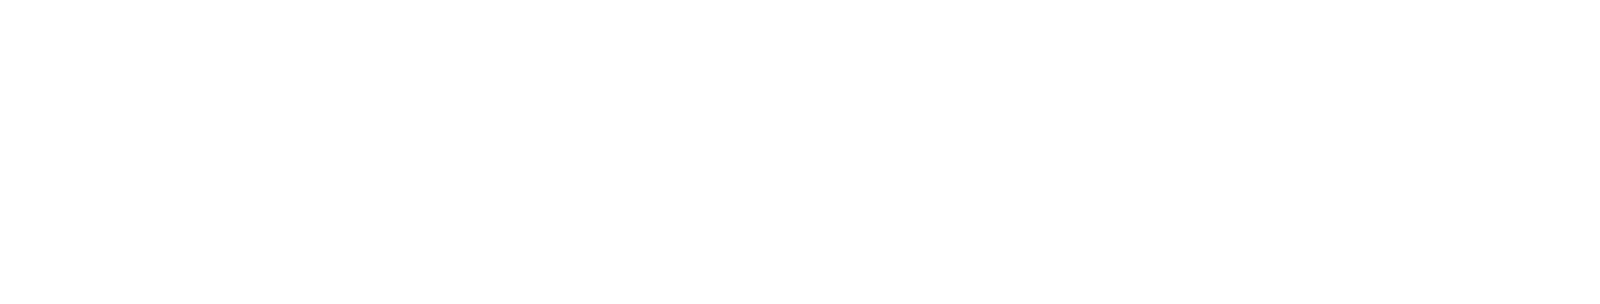 Tencent logo grand pour les fonds sombres (PNG transparent)